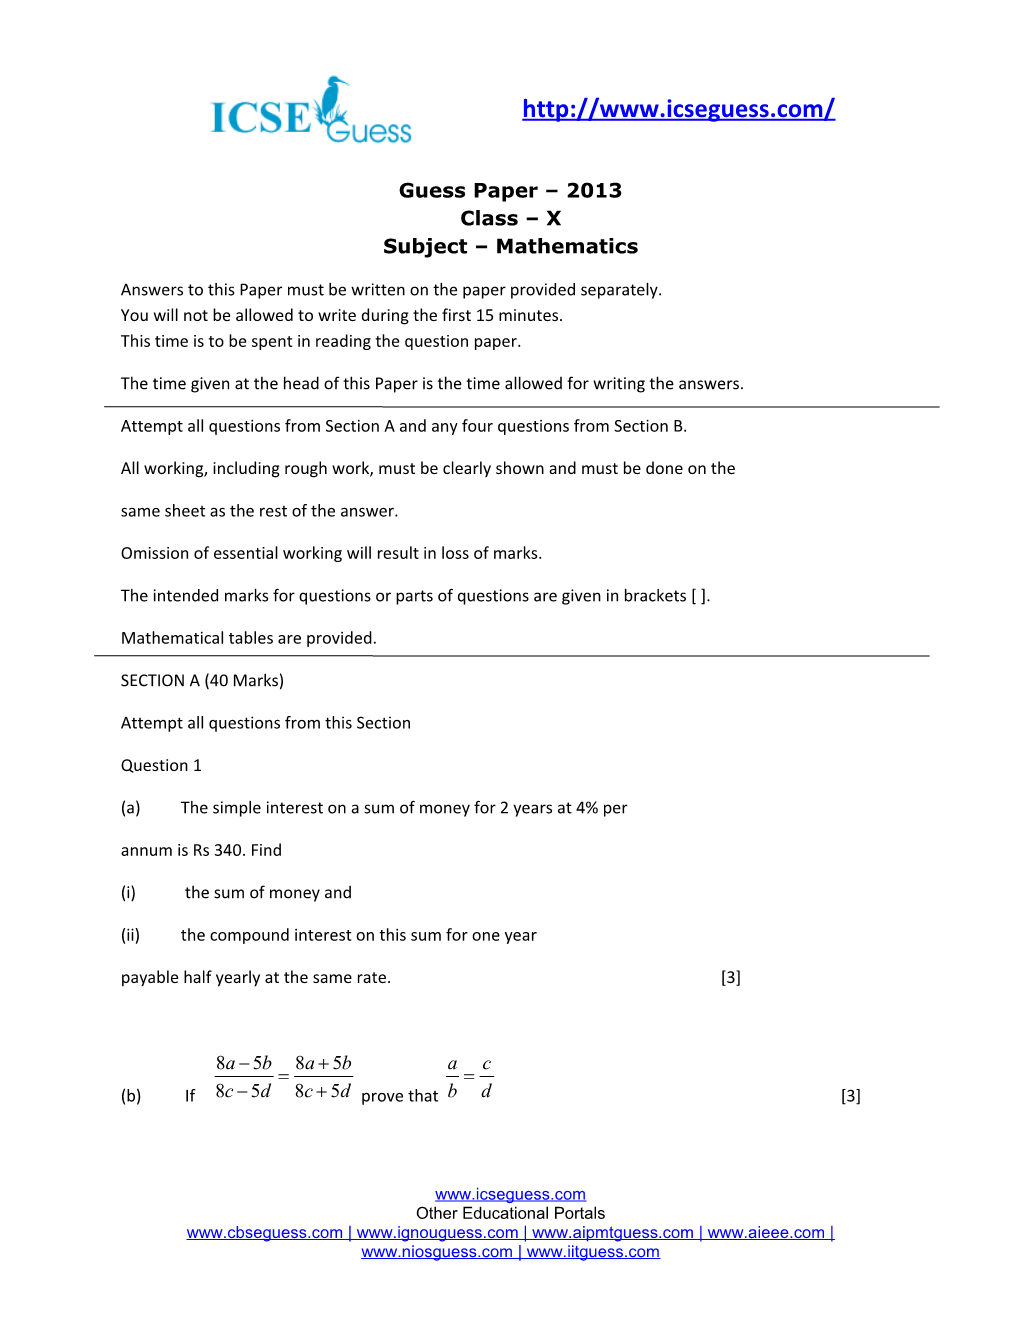 Guess Paper 2013 Class X Subject Mathematics